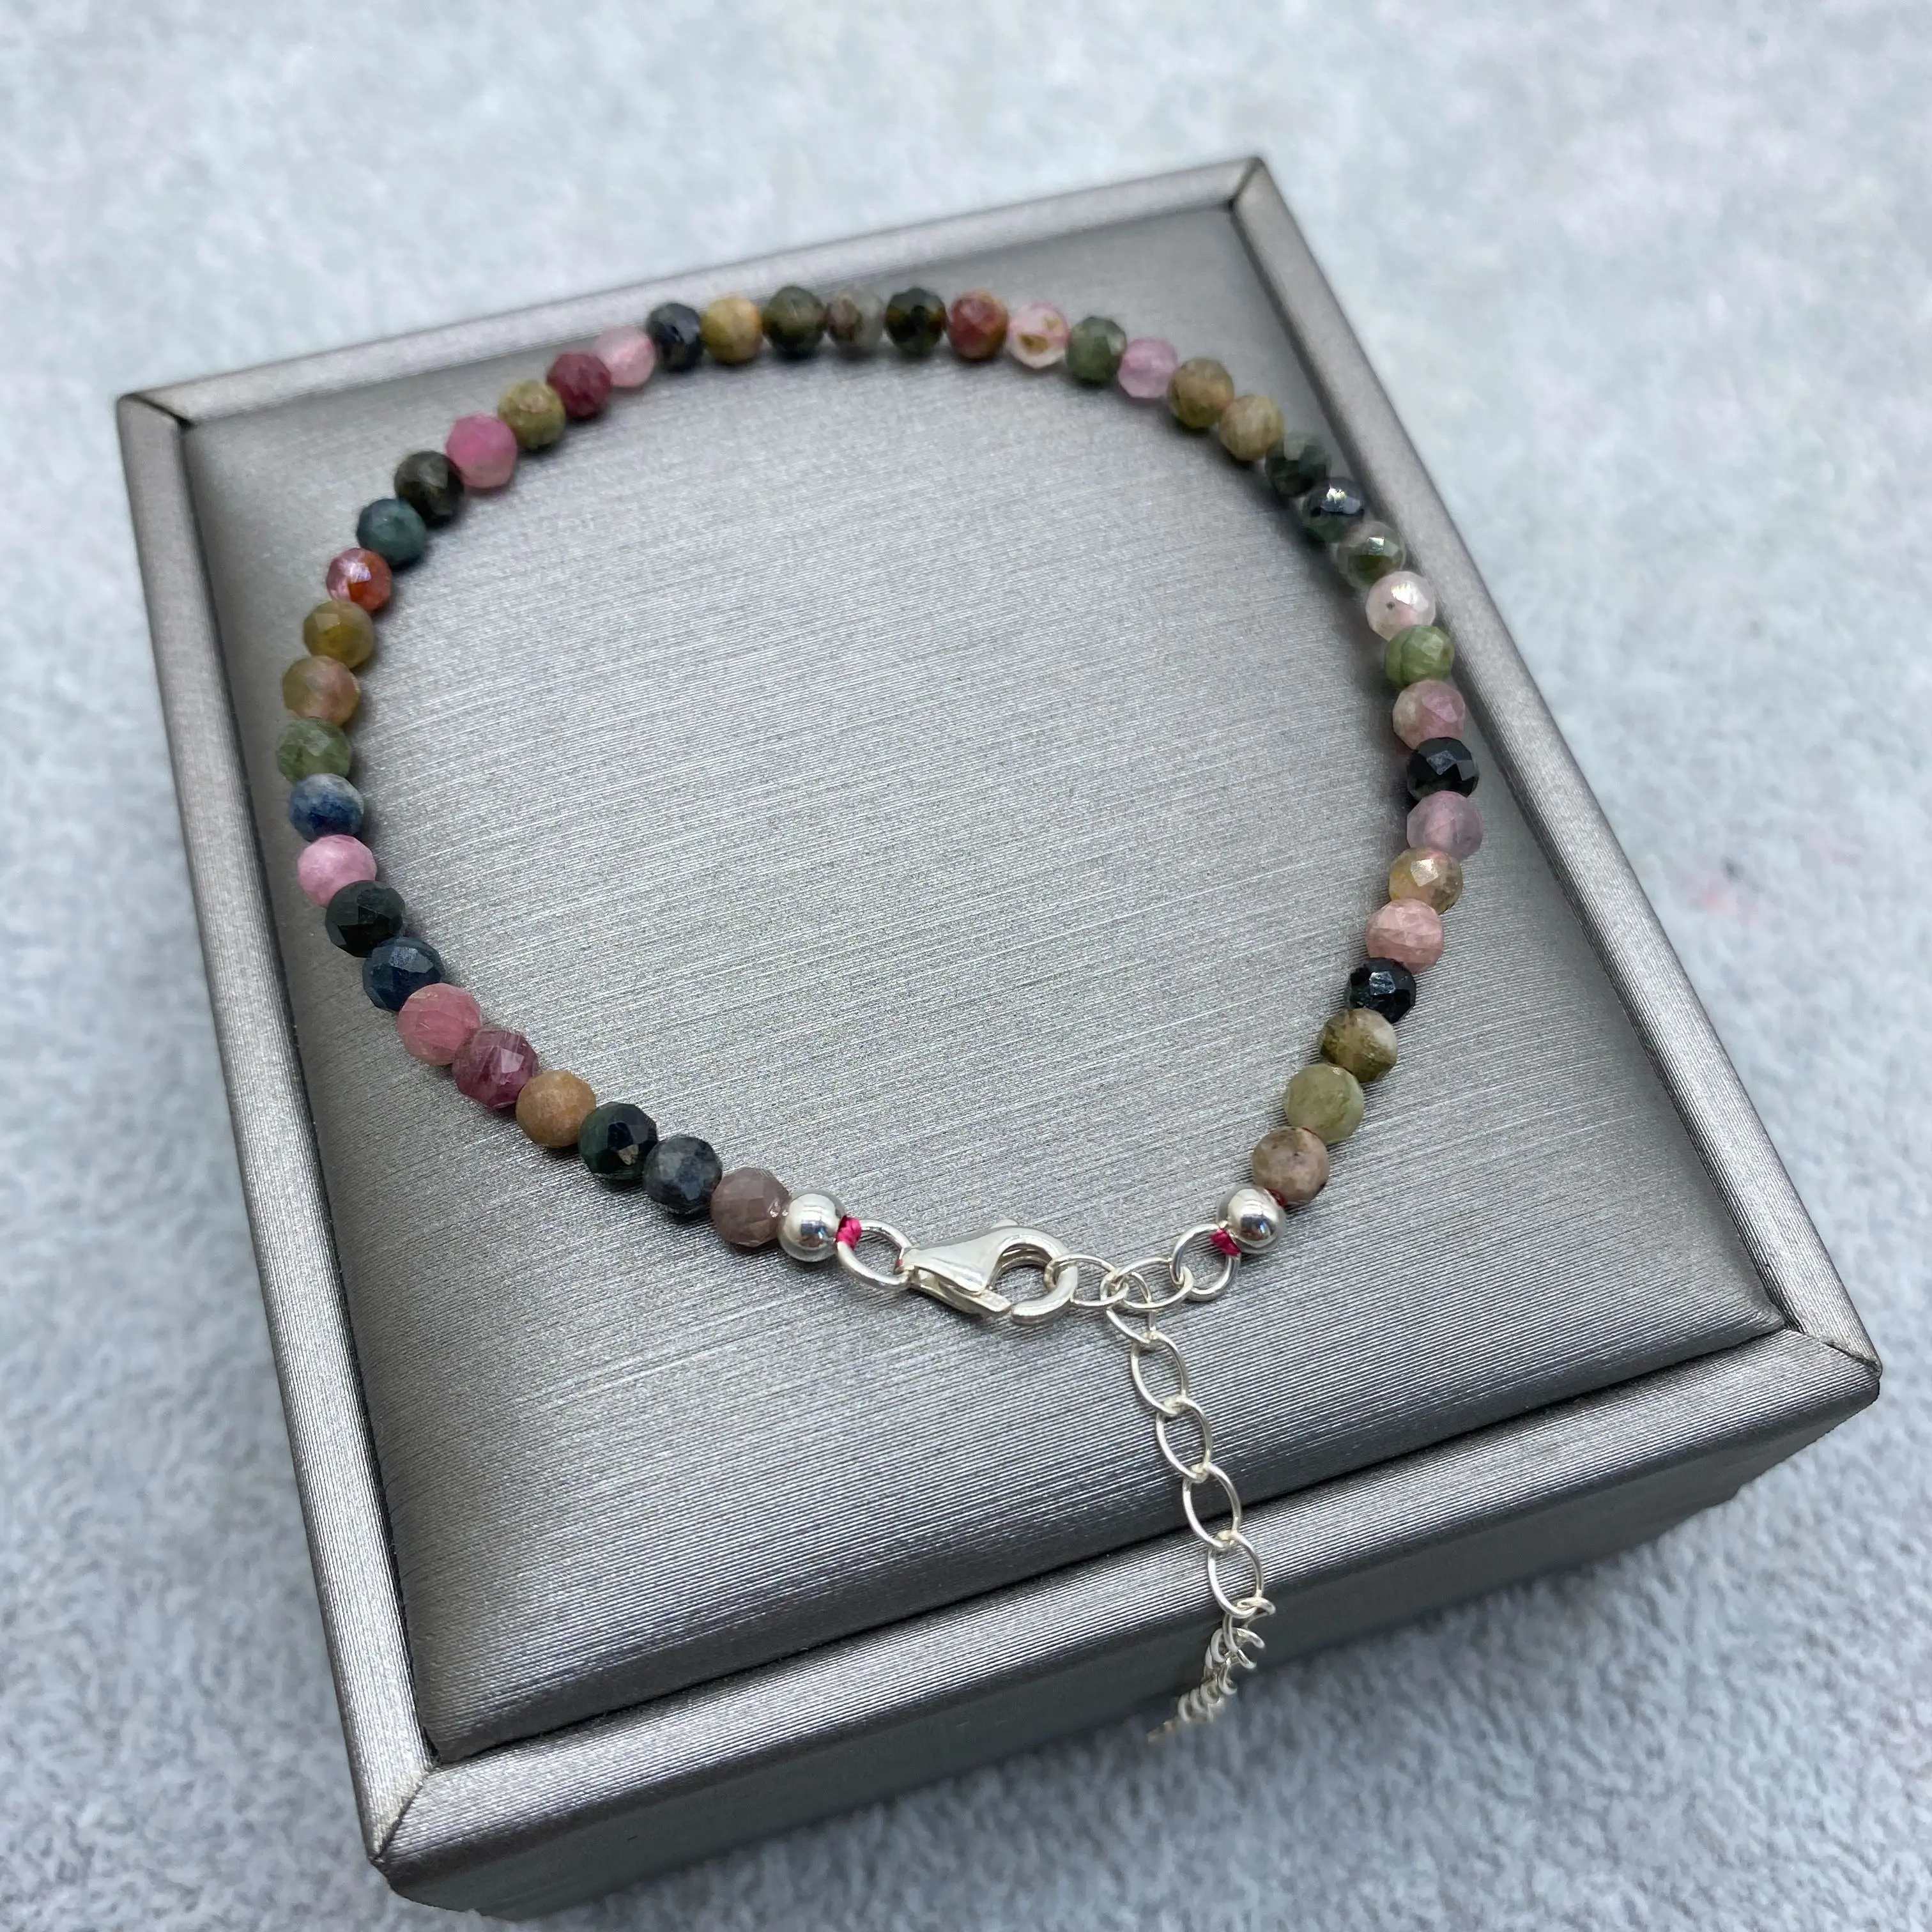 

Многоцветный Браслет с гранями, изящный браслет из серебра пробы с кристаллами, уникальный женский браслет в богемном стиле, подарок